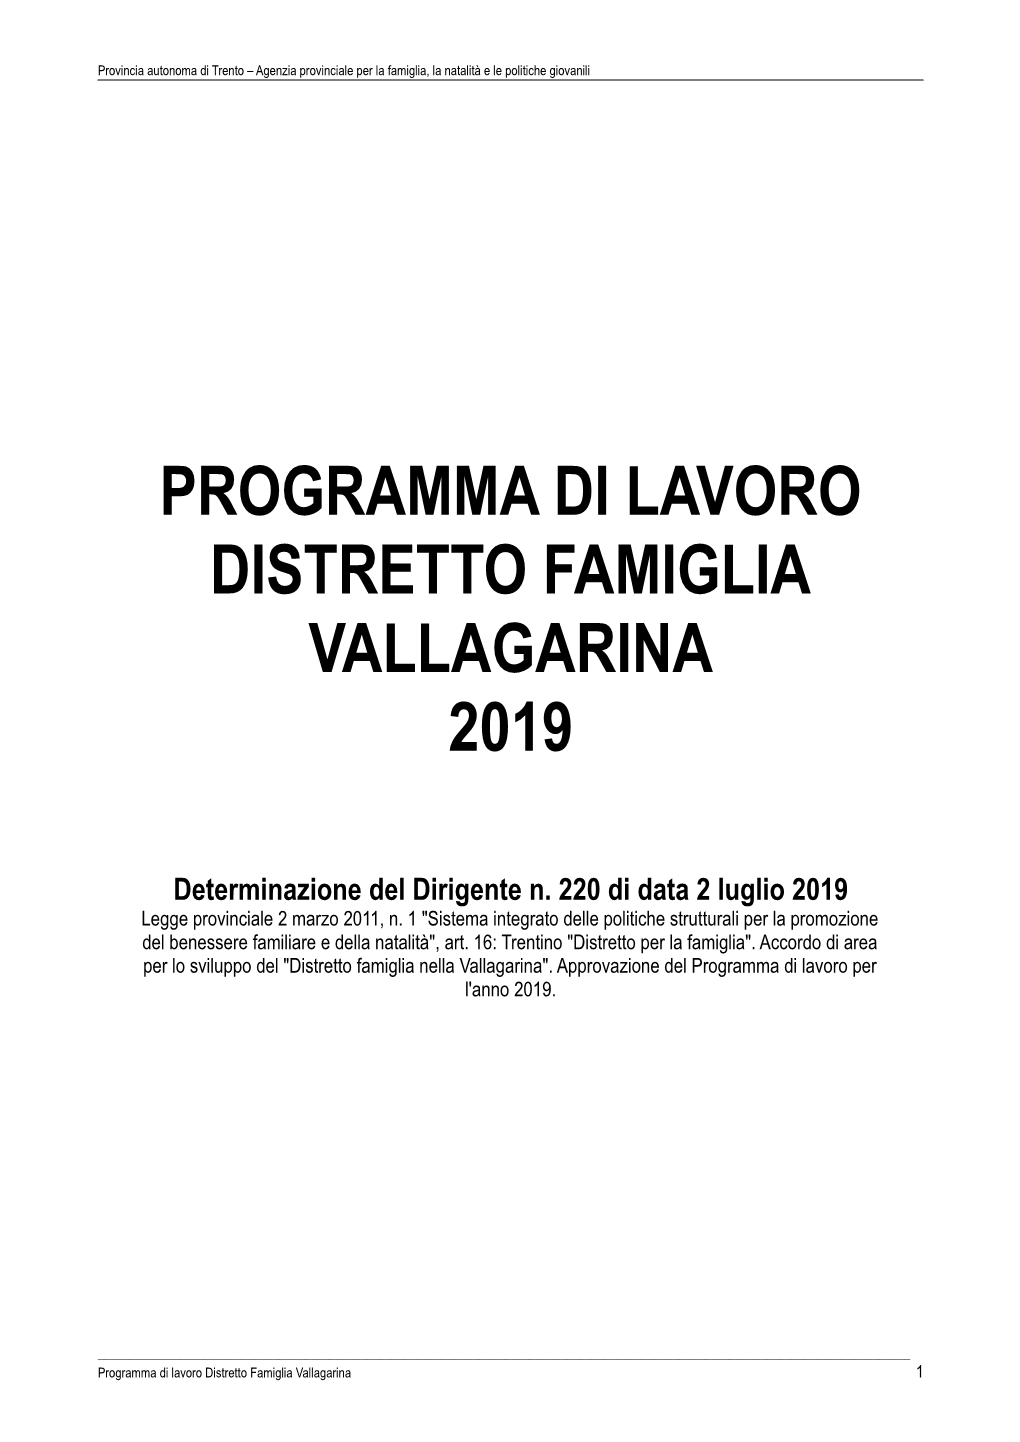 Programma Di Lavoro Distretto Famiglia Vallagarina 2019